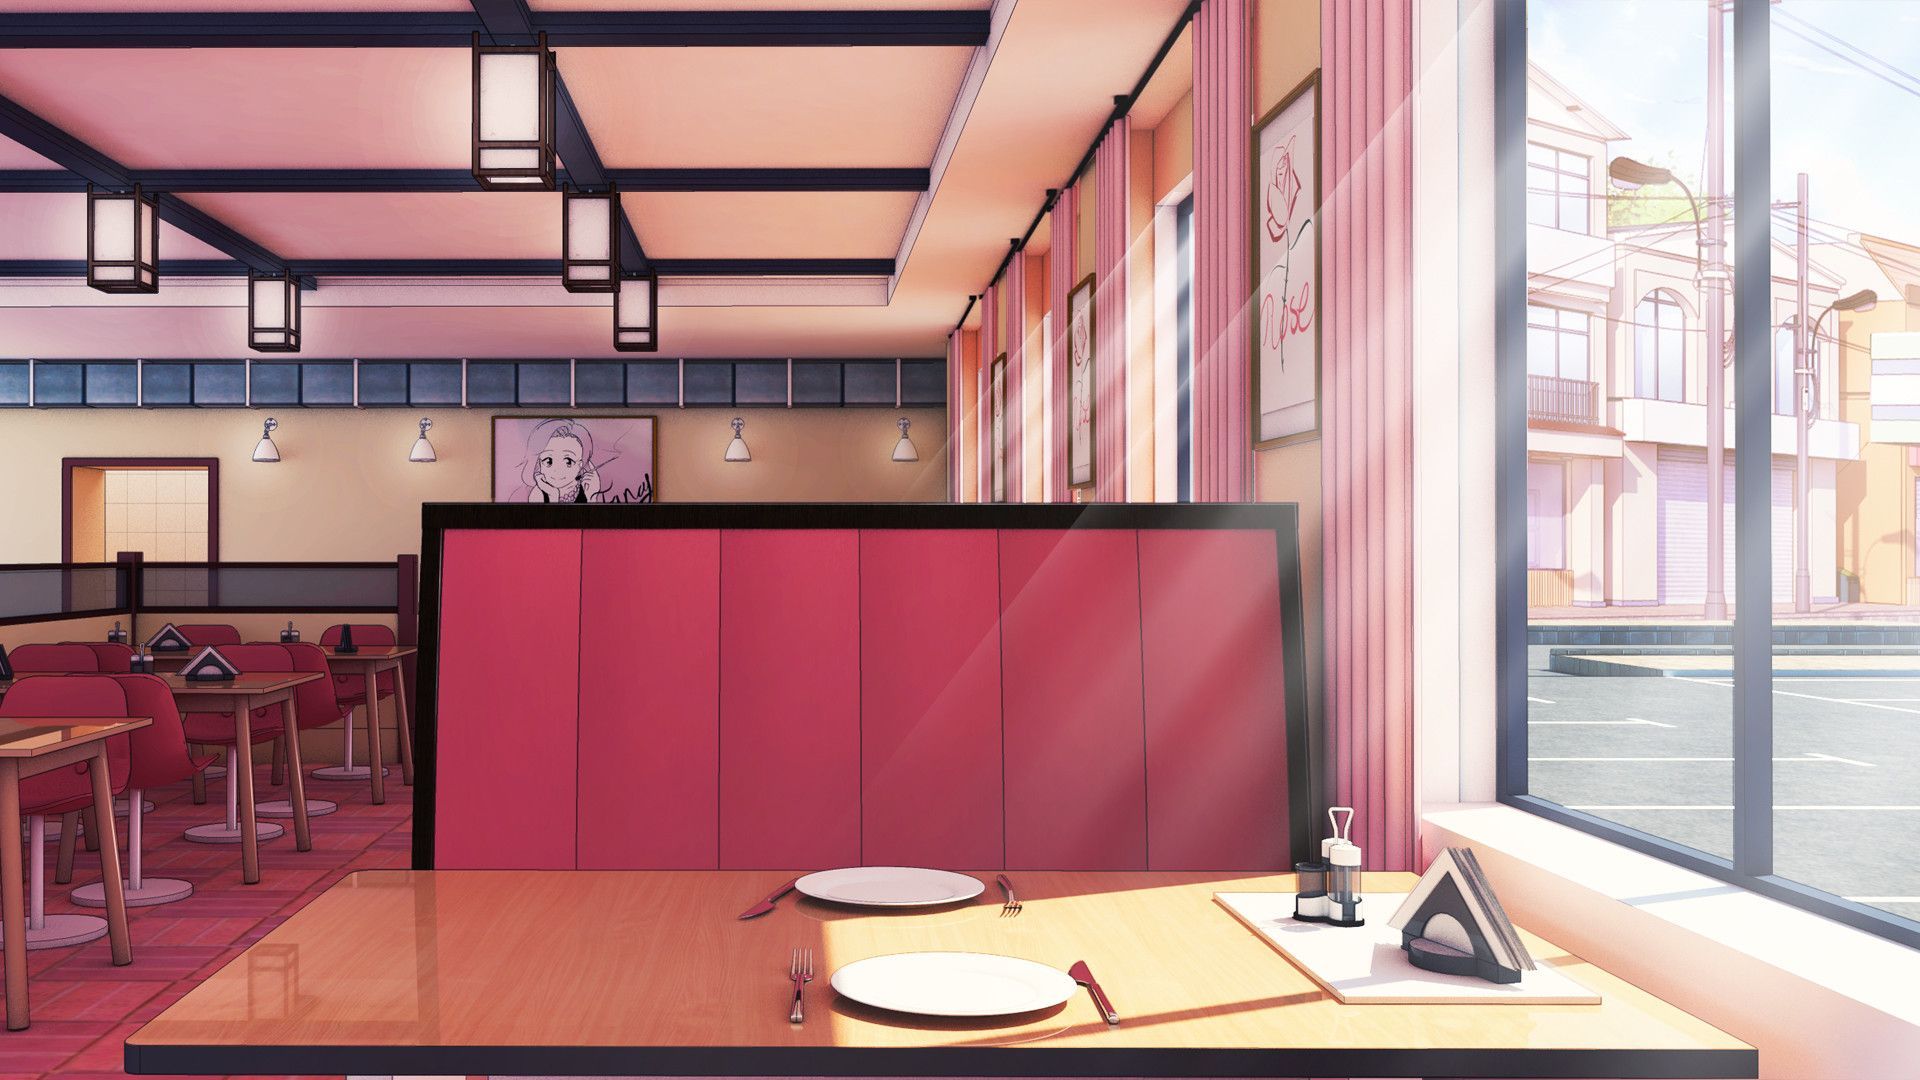 13 Anime Cafe Backgrounds ideas | anime café, anime café background,  episode backgrounds